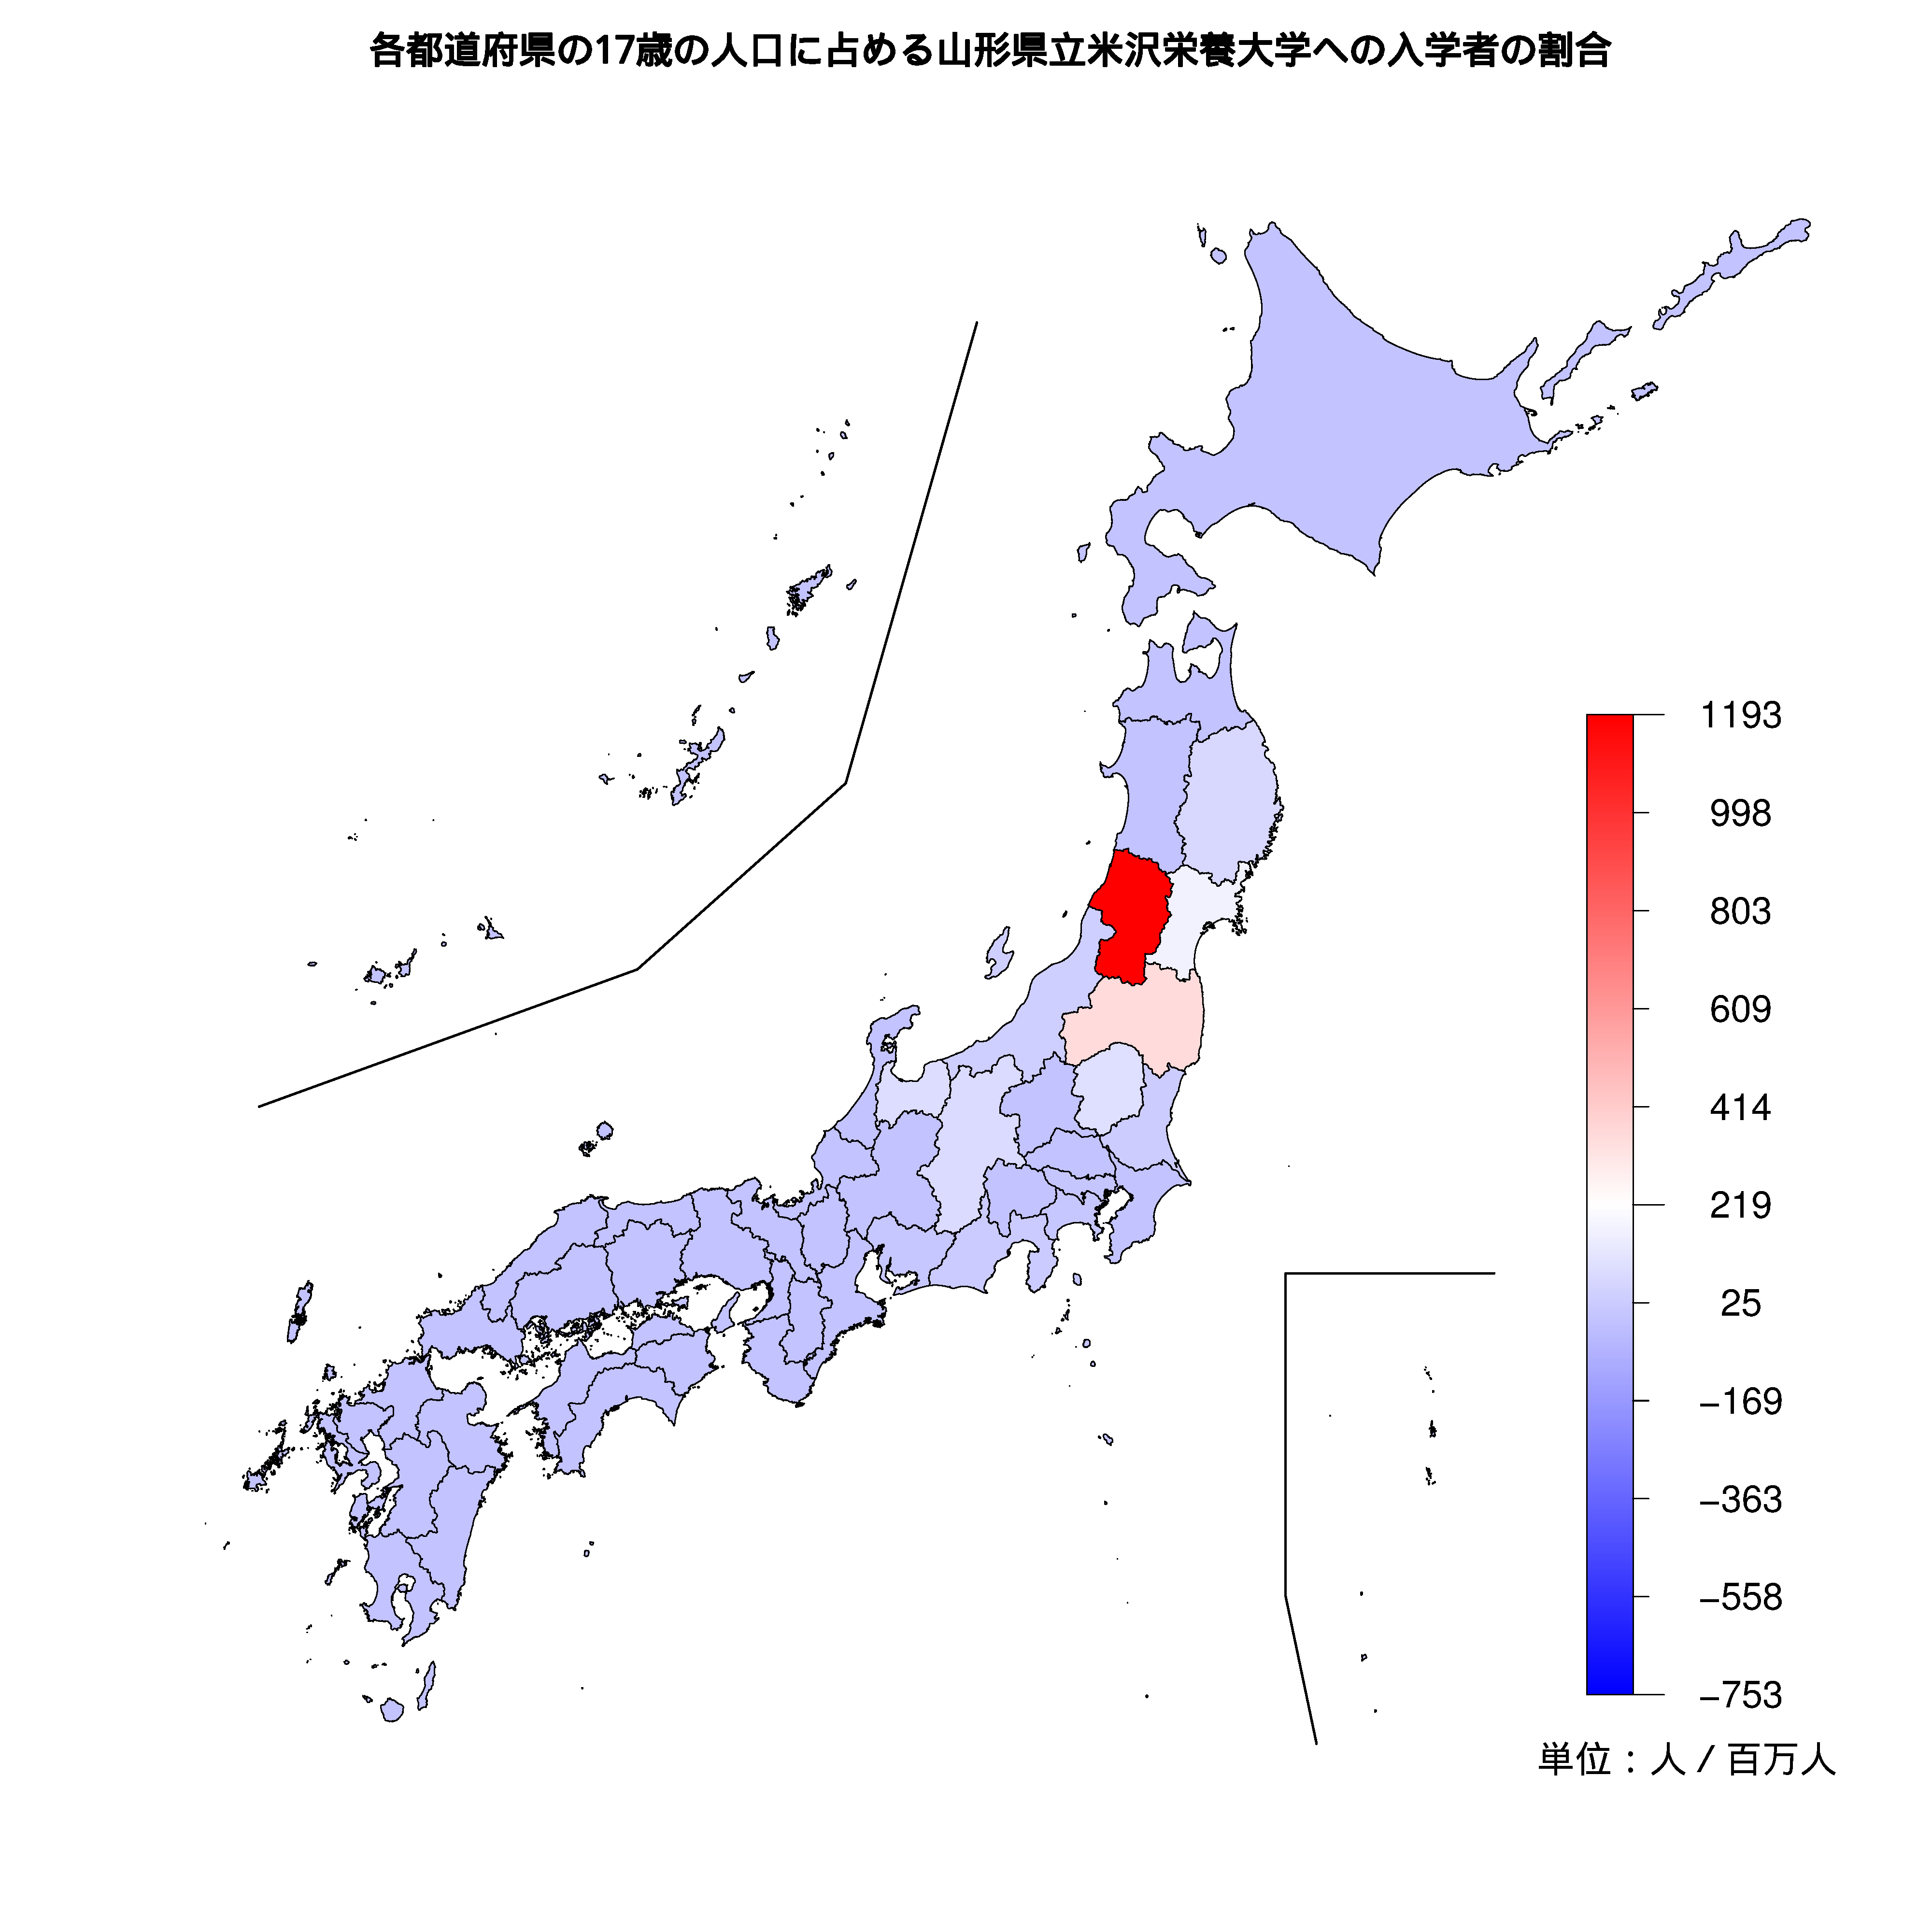 山形県立米沢栄養大学への入学者が多い都道府県の色分け地図